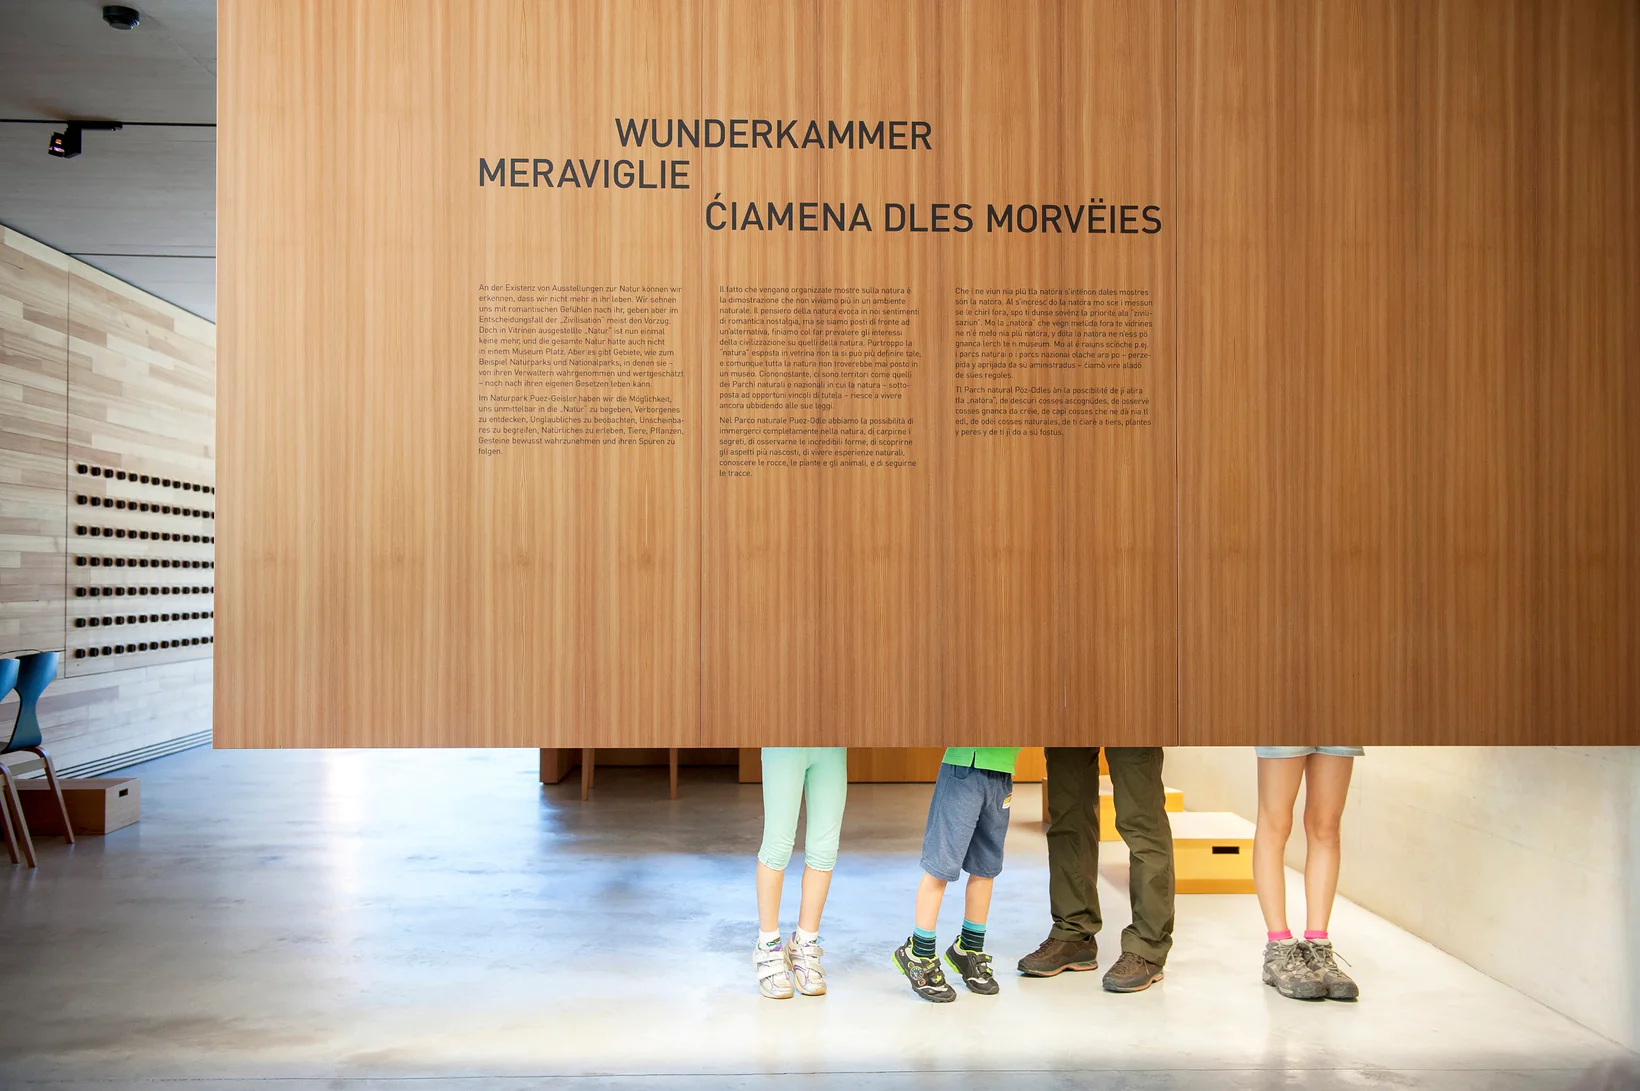 Le gambe di quattro visitatori della Casa del Parco Naturale di Funes sono dietro una parete espositiva con le tre lingue altoatesine: italiano, tedesco e ladino.